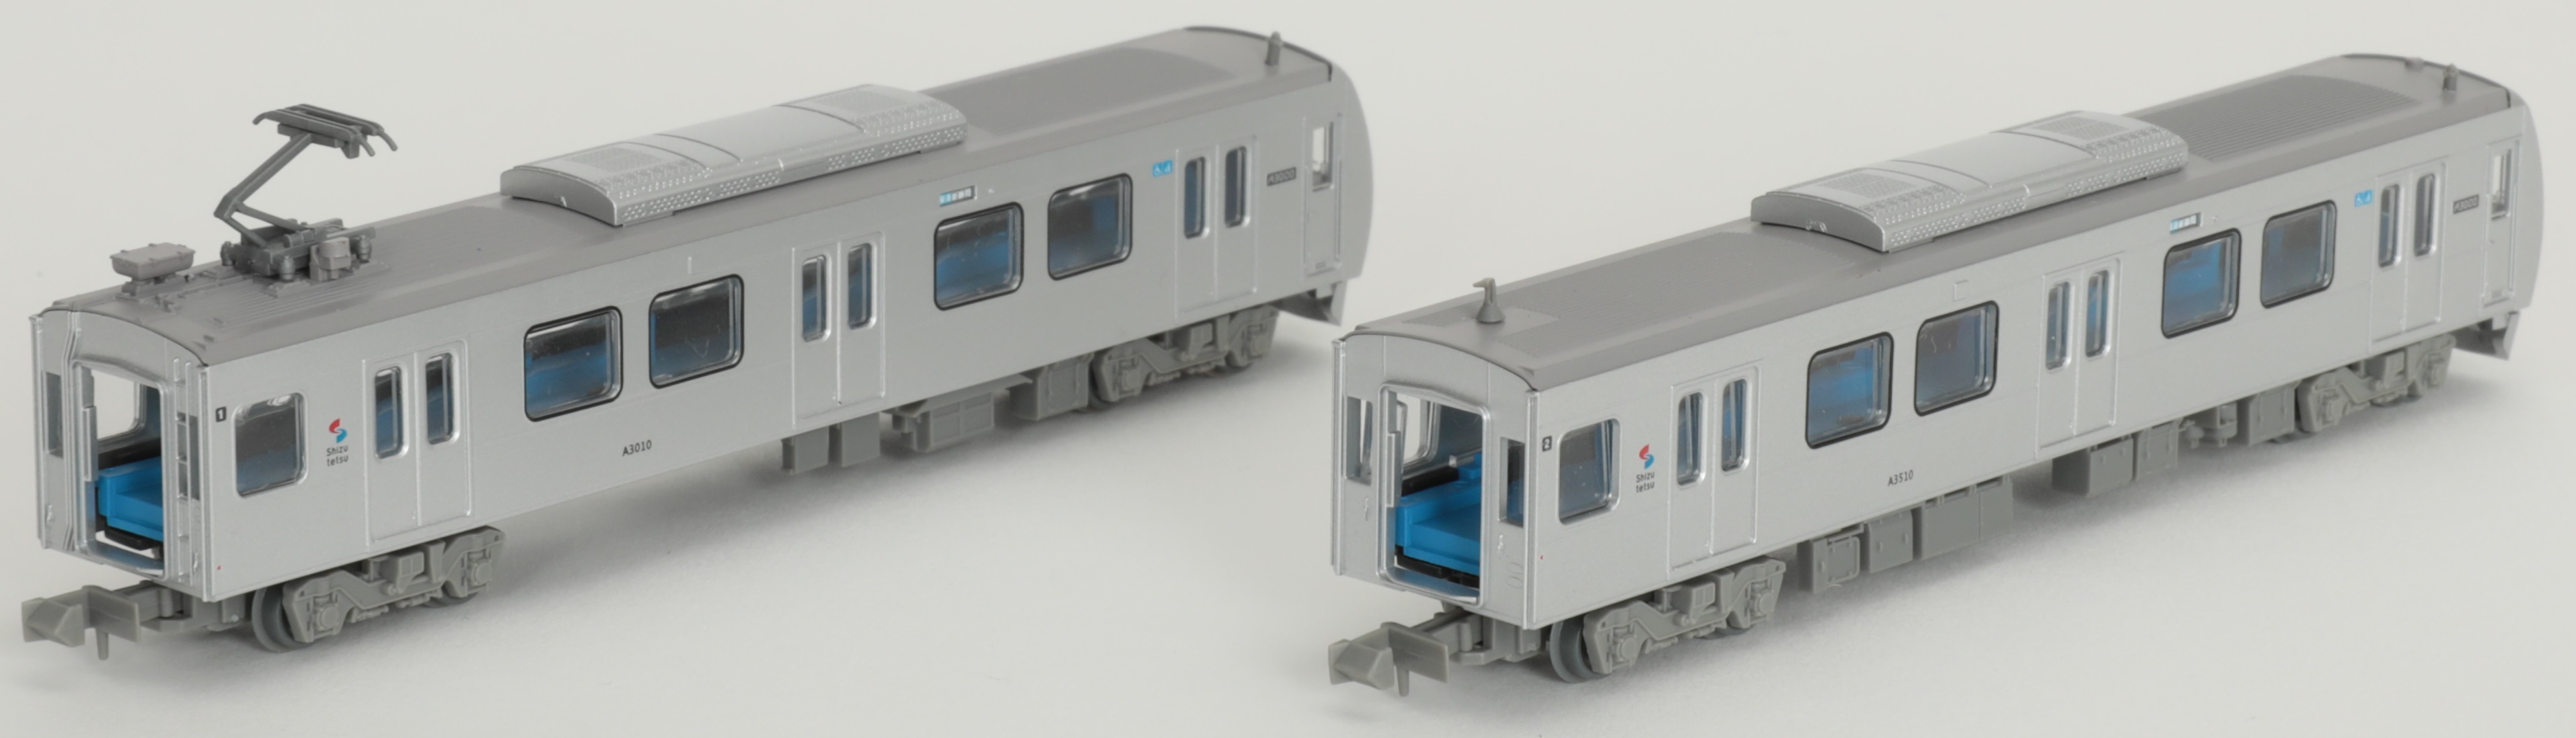 トミーテック 322078 鉄道コレクション静岡鉄道A3000形 2両セットi | 鉄道模型 通販 ホビーショップタムタム